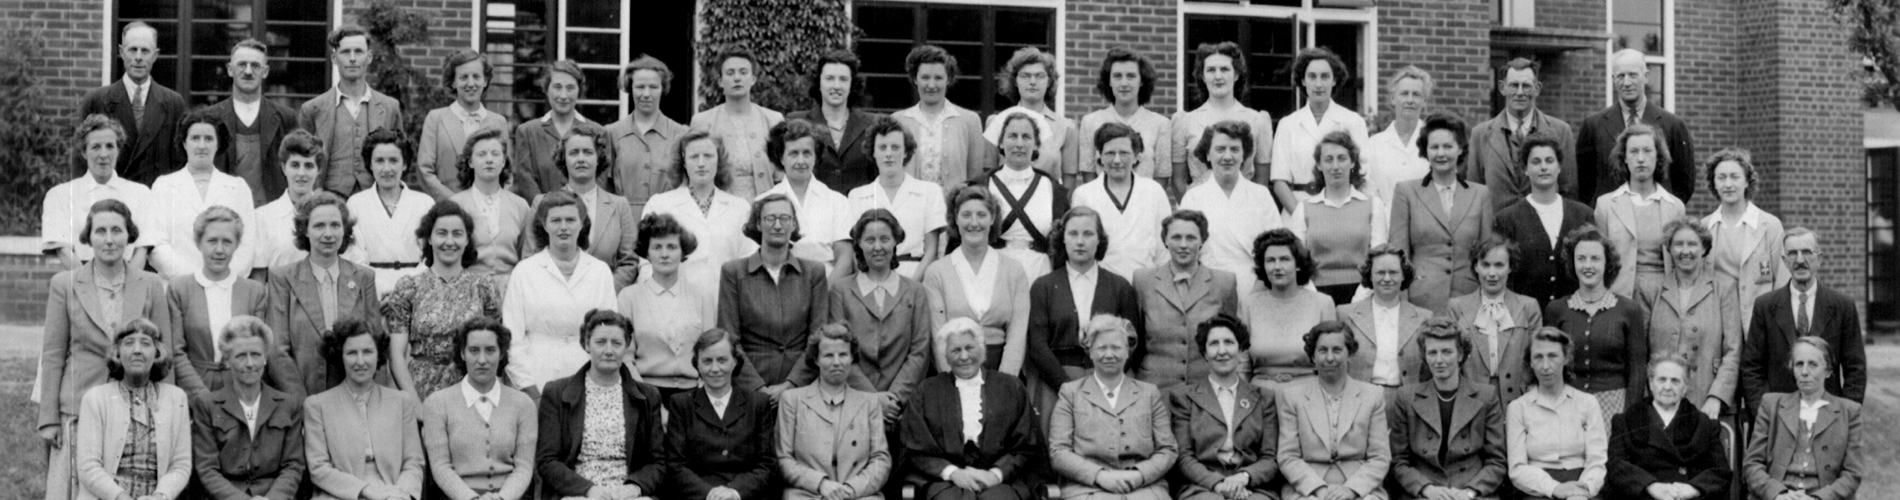 Ashford School Staff May 1948